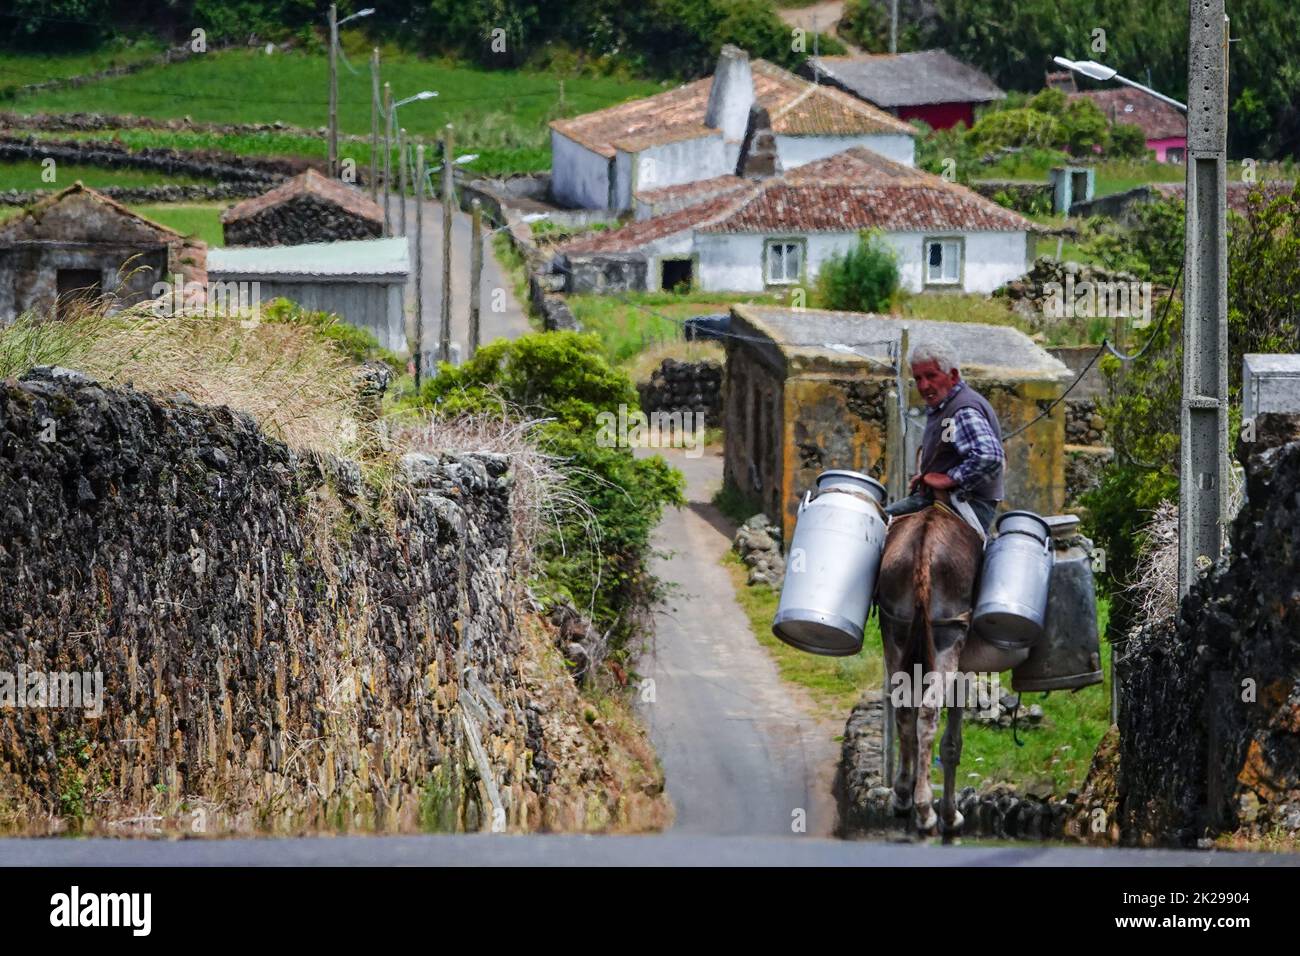 Caseificio che trasporta lattine di latte su un asino in un deposito a Villa Nova, isola di Terceira, Azzorre, Portogallo. Le Azzorre sono conosciute come la terra delle vacche felici e producono il 30% di tutta la produzione lattiero-casearia in Portogallo. Foto Stock